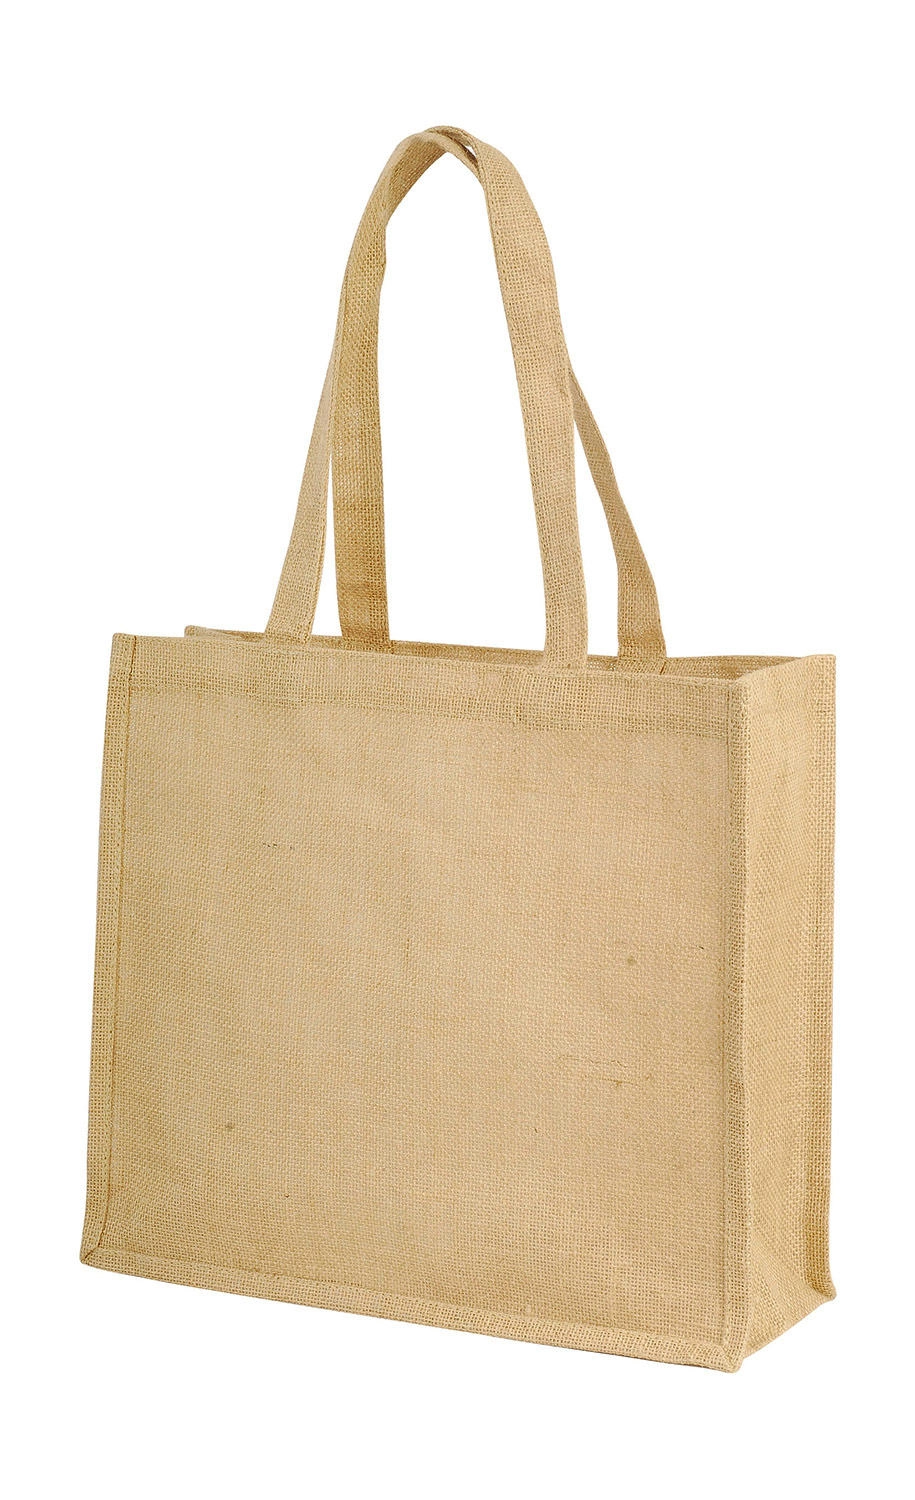 Calcutta Long Handled Jute Shopper Bag zum Besticken und Bedrucken in der Farbe Natural mit Ihren Logo, Schriftzug oder Motiv.